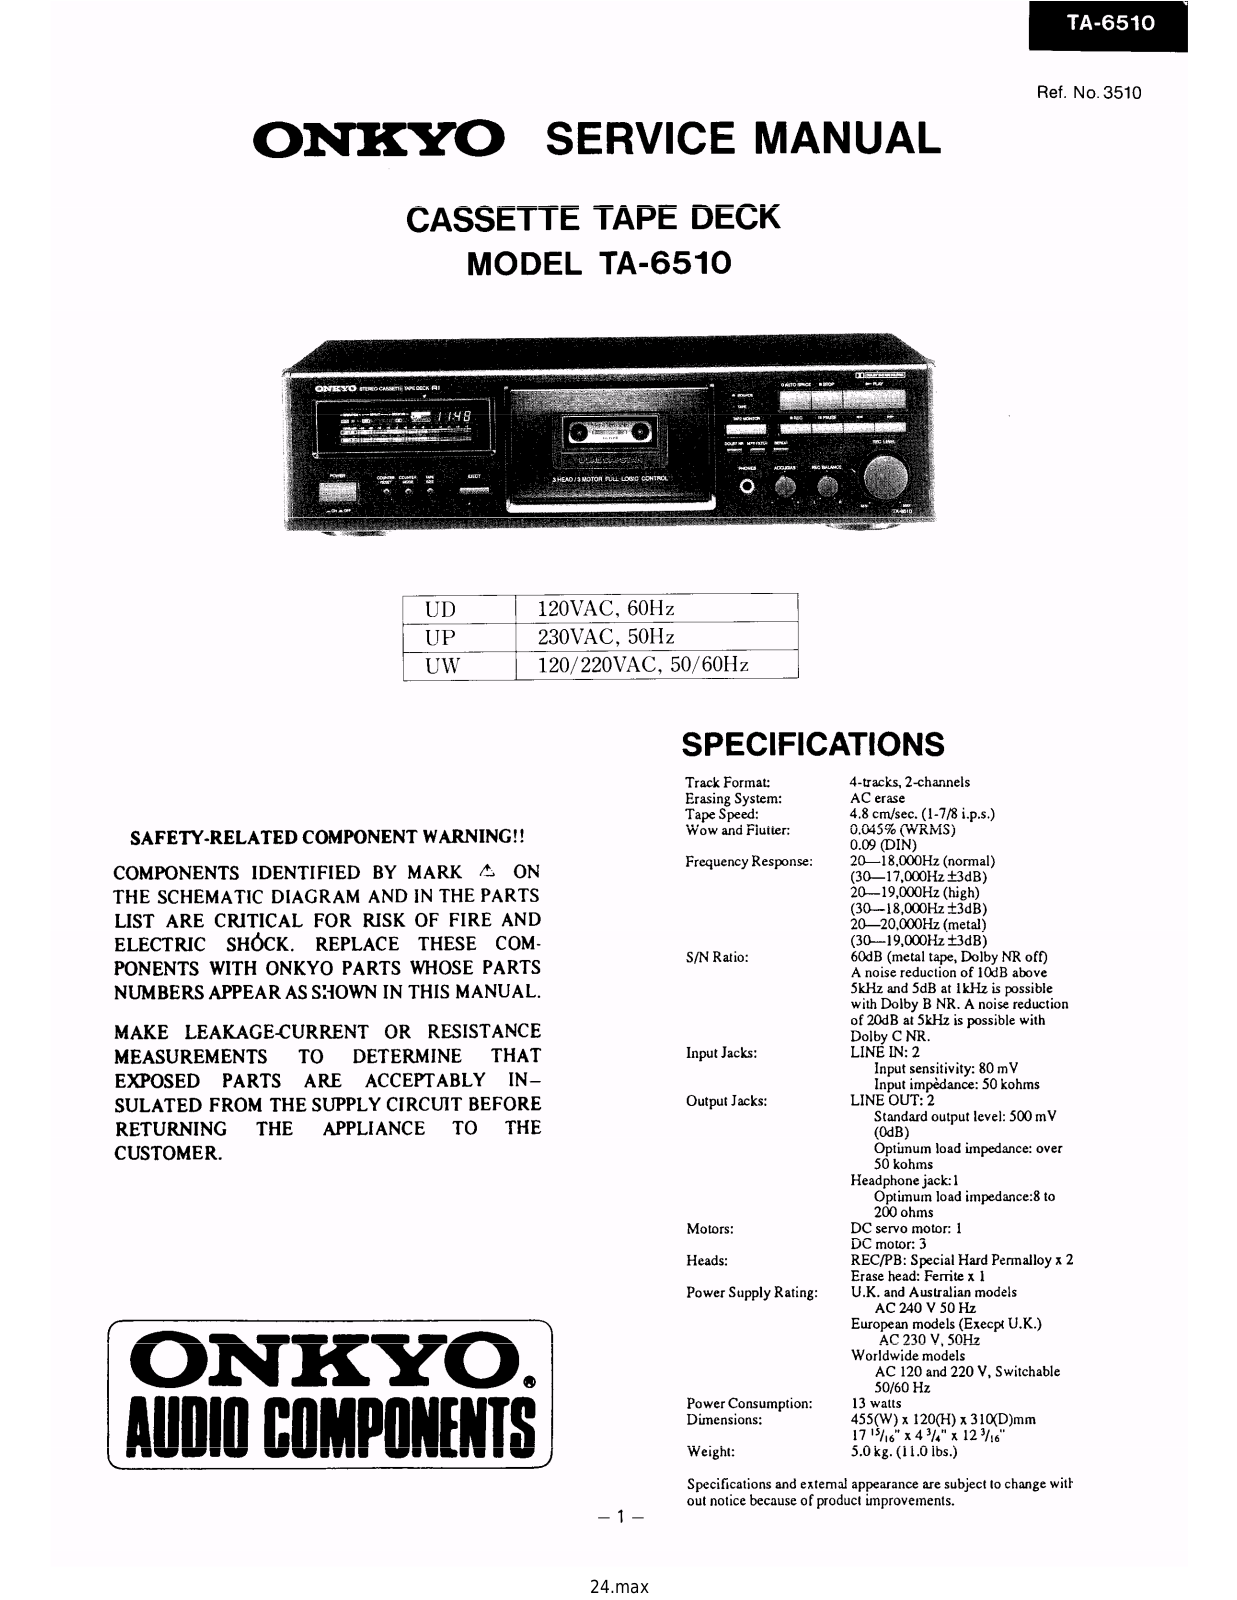 Onkyo TA-6510 Service manual